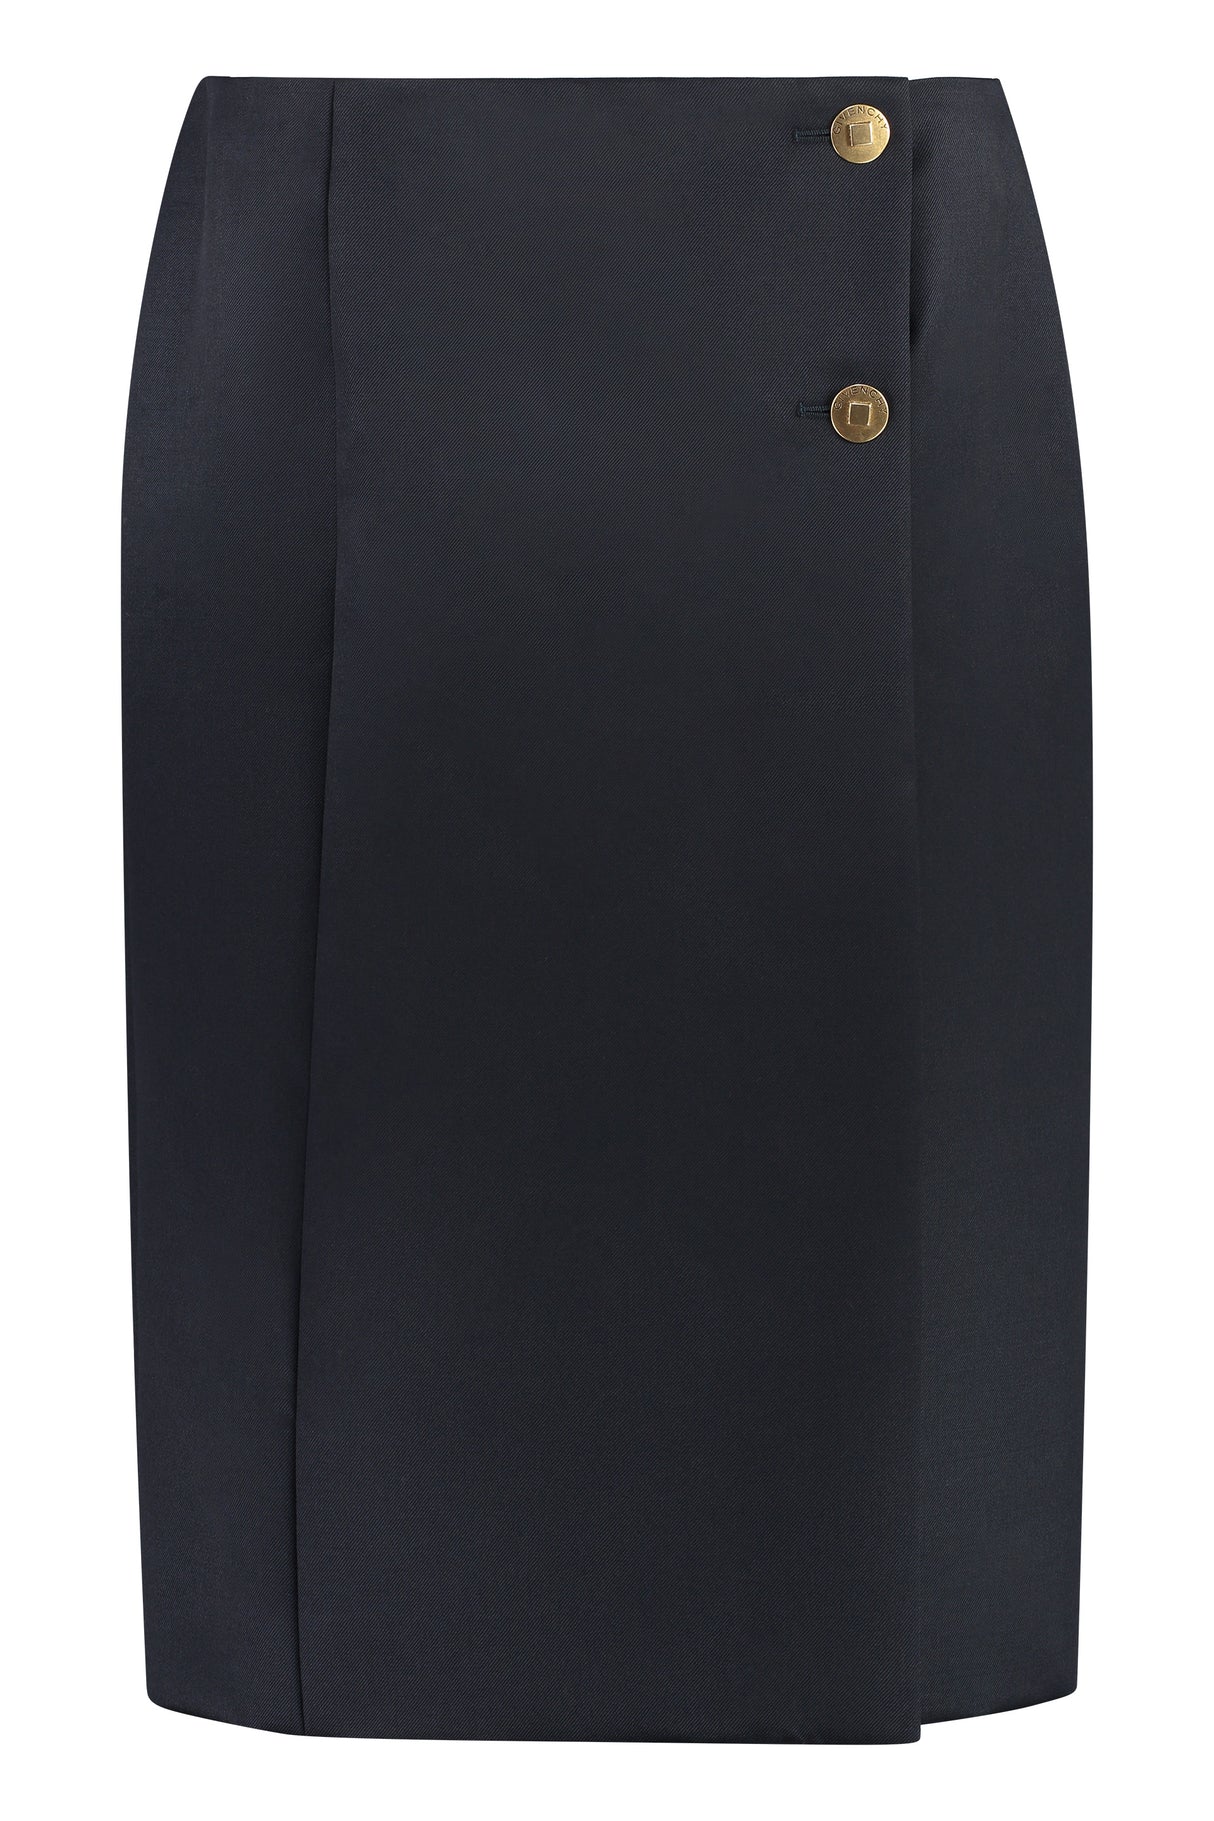 Blue Gabardine Wrap Skirt for Women in FW23 Collection